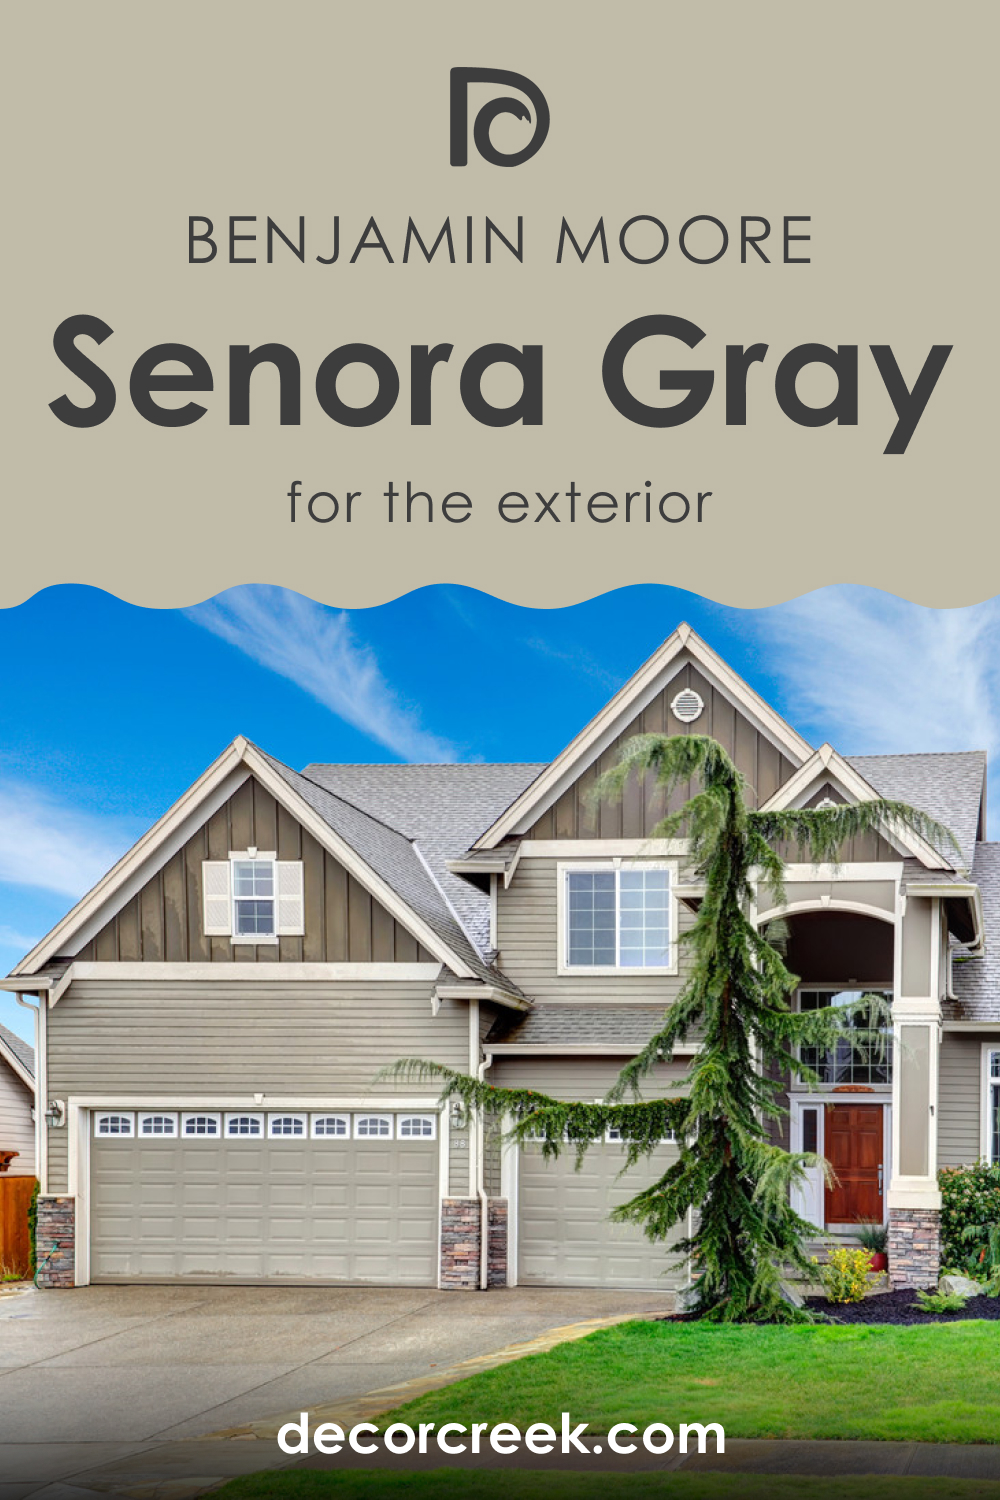 Senora Gray 1530 for an Exterior